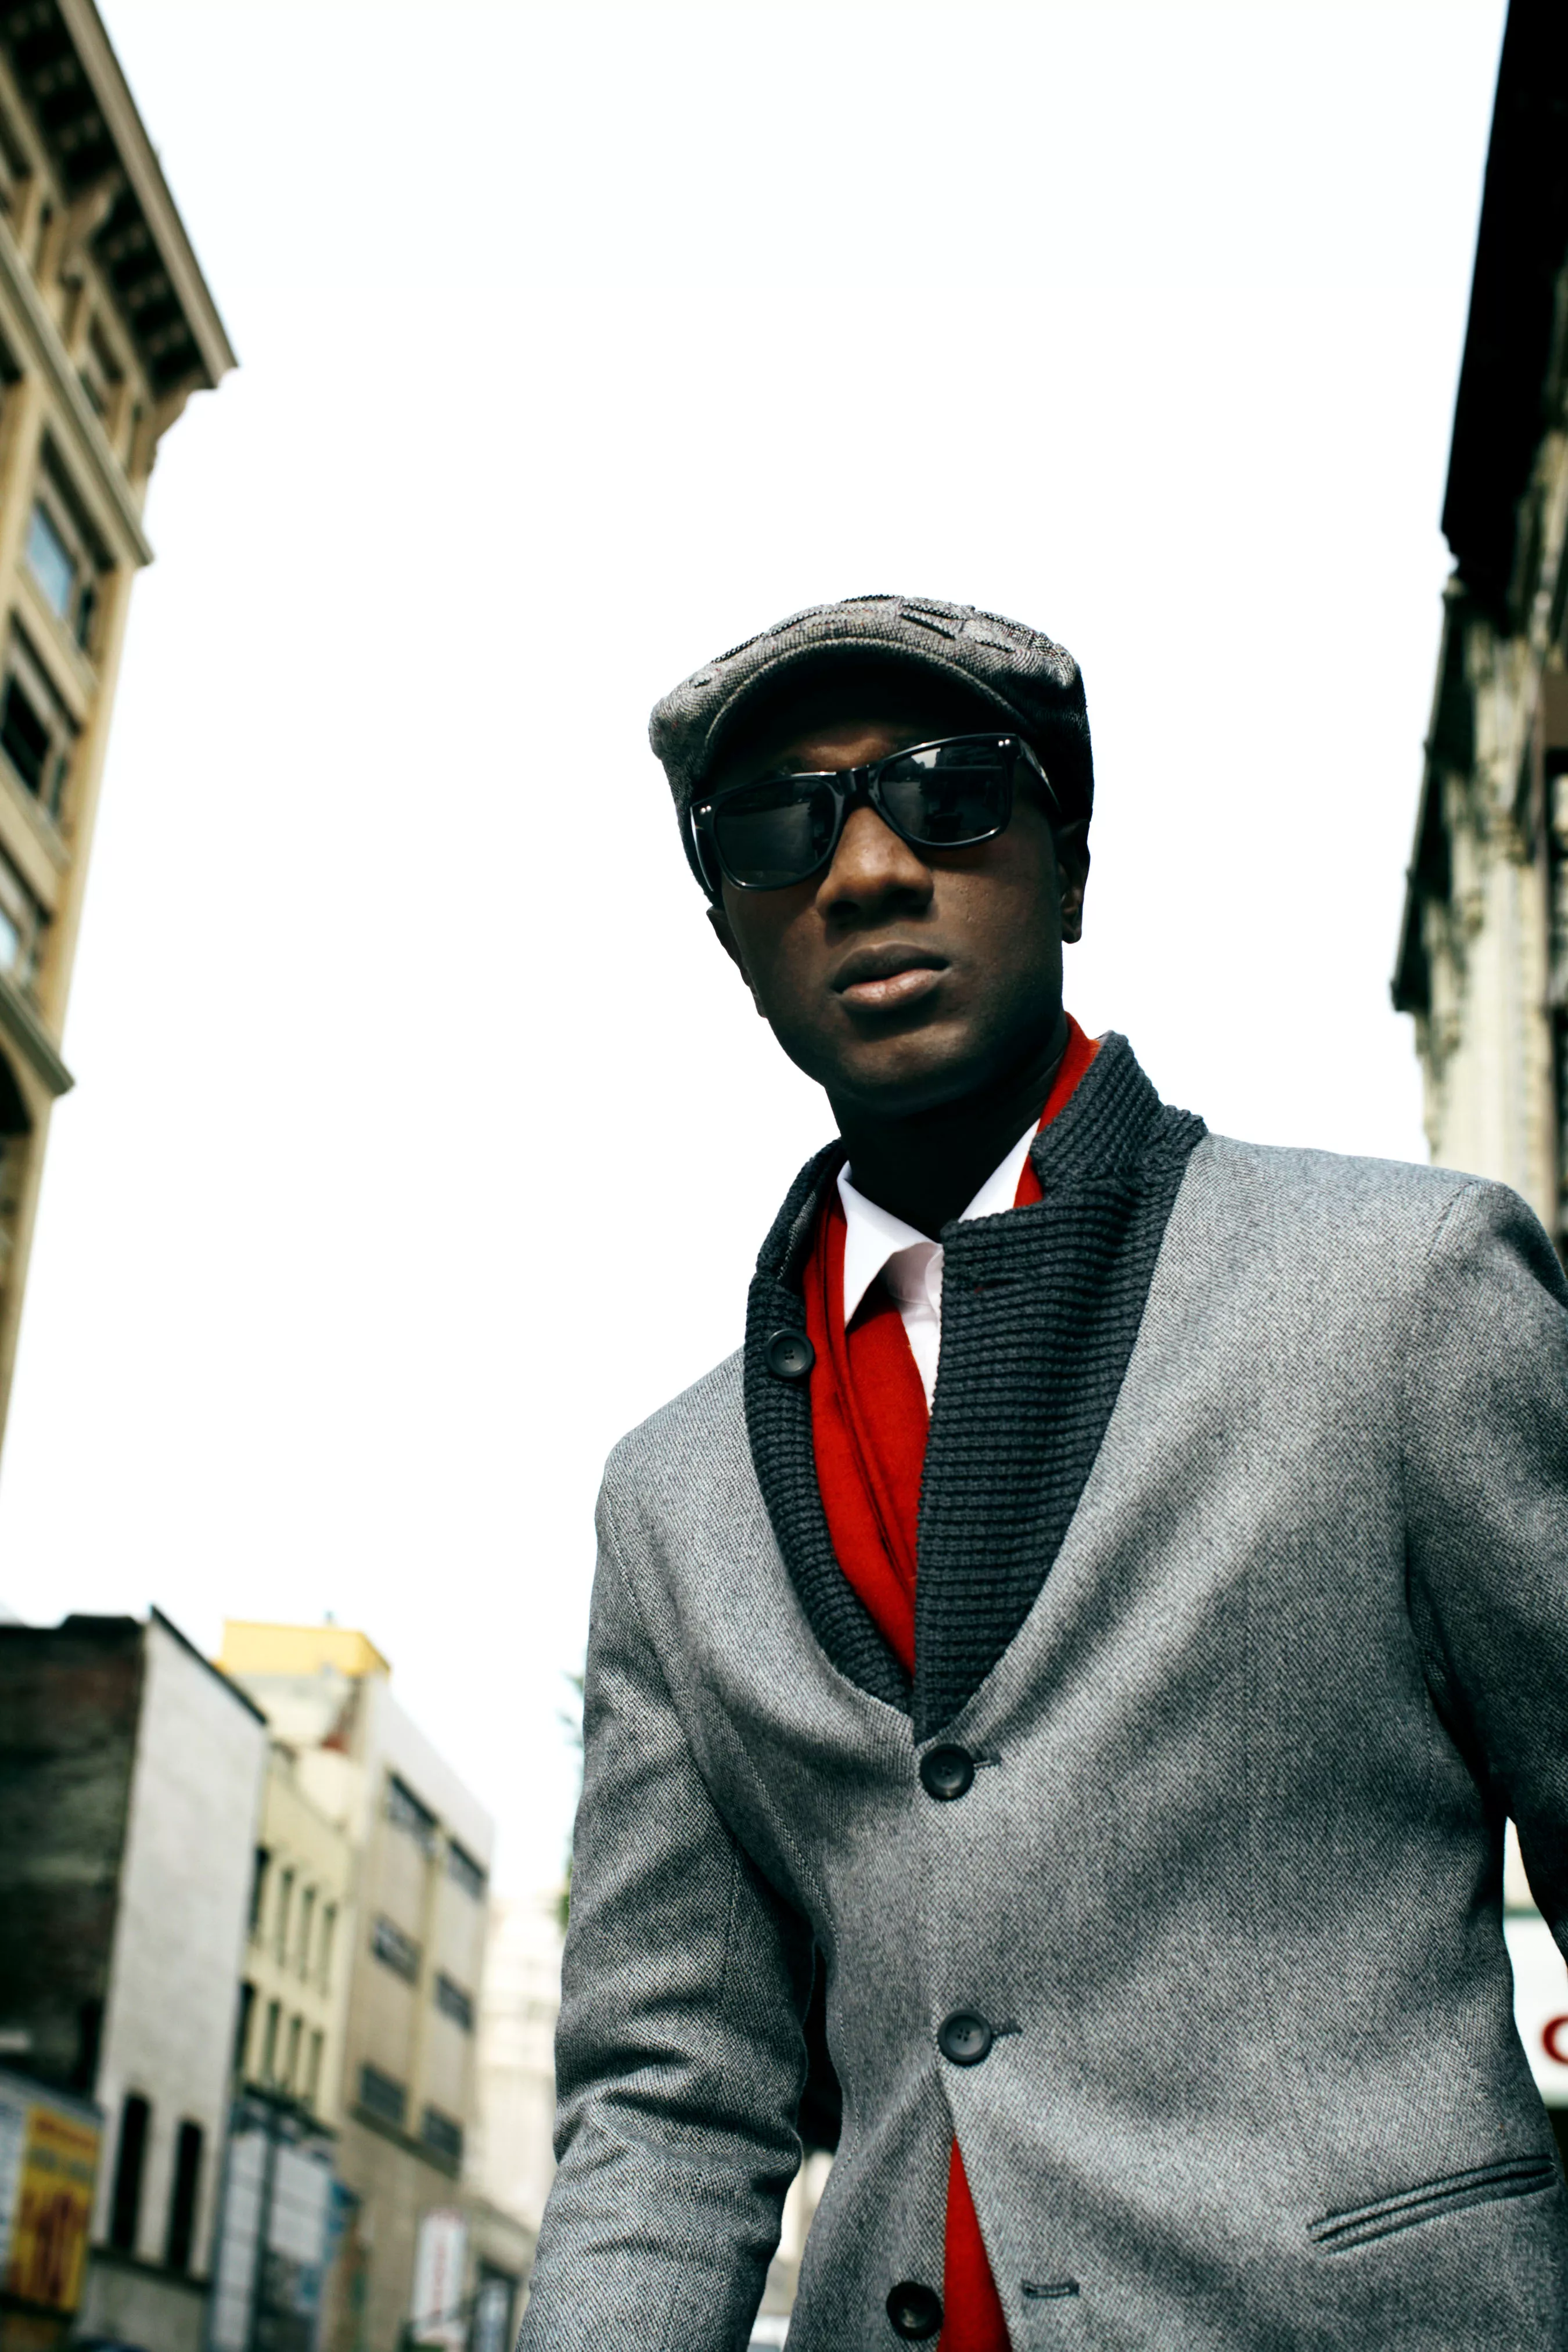 Aloe Blacc – hiphopsanger med masser af soul